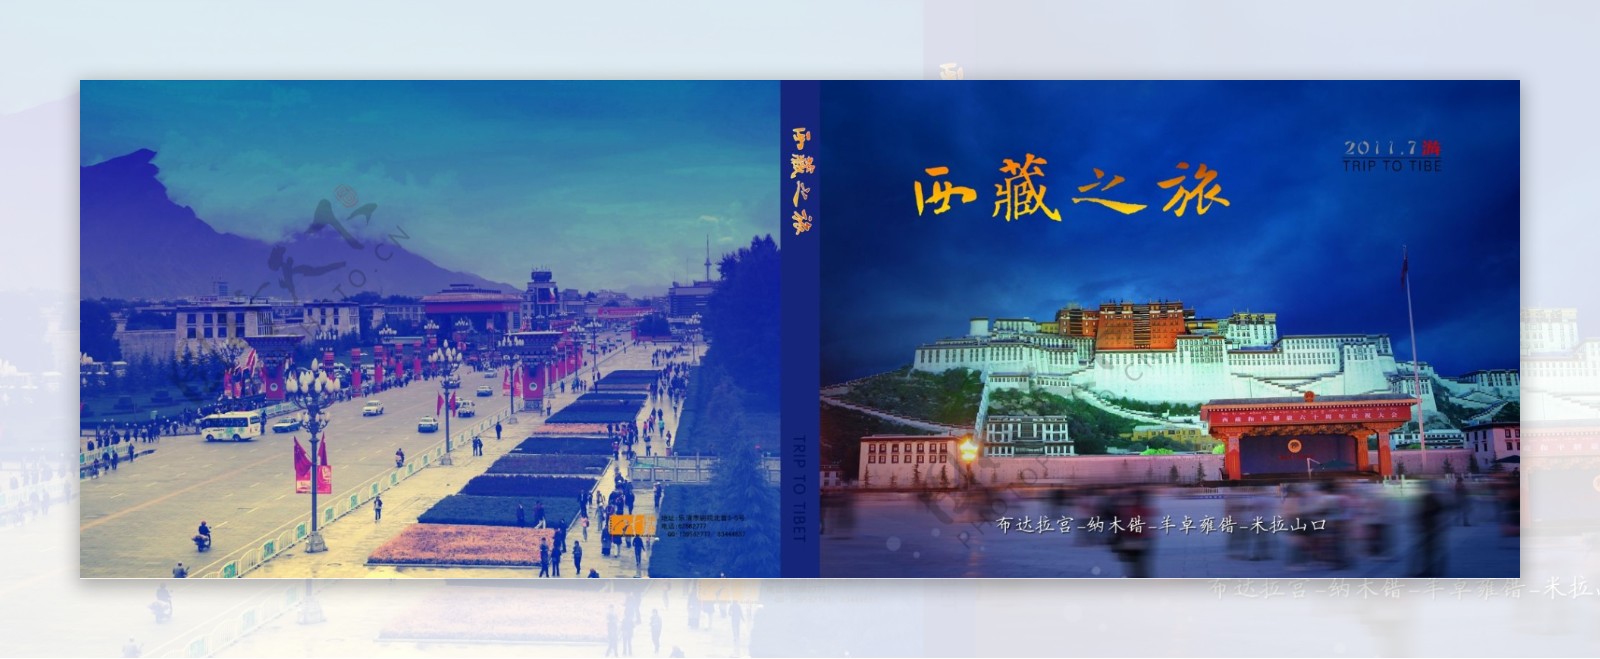 西藏之旅封面设计图片